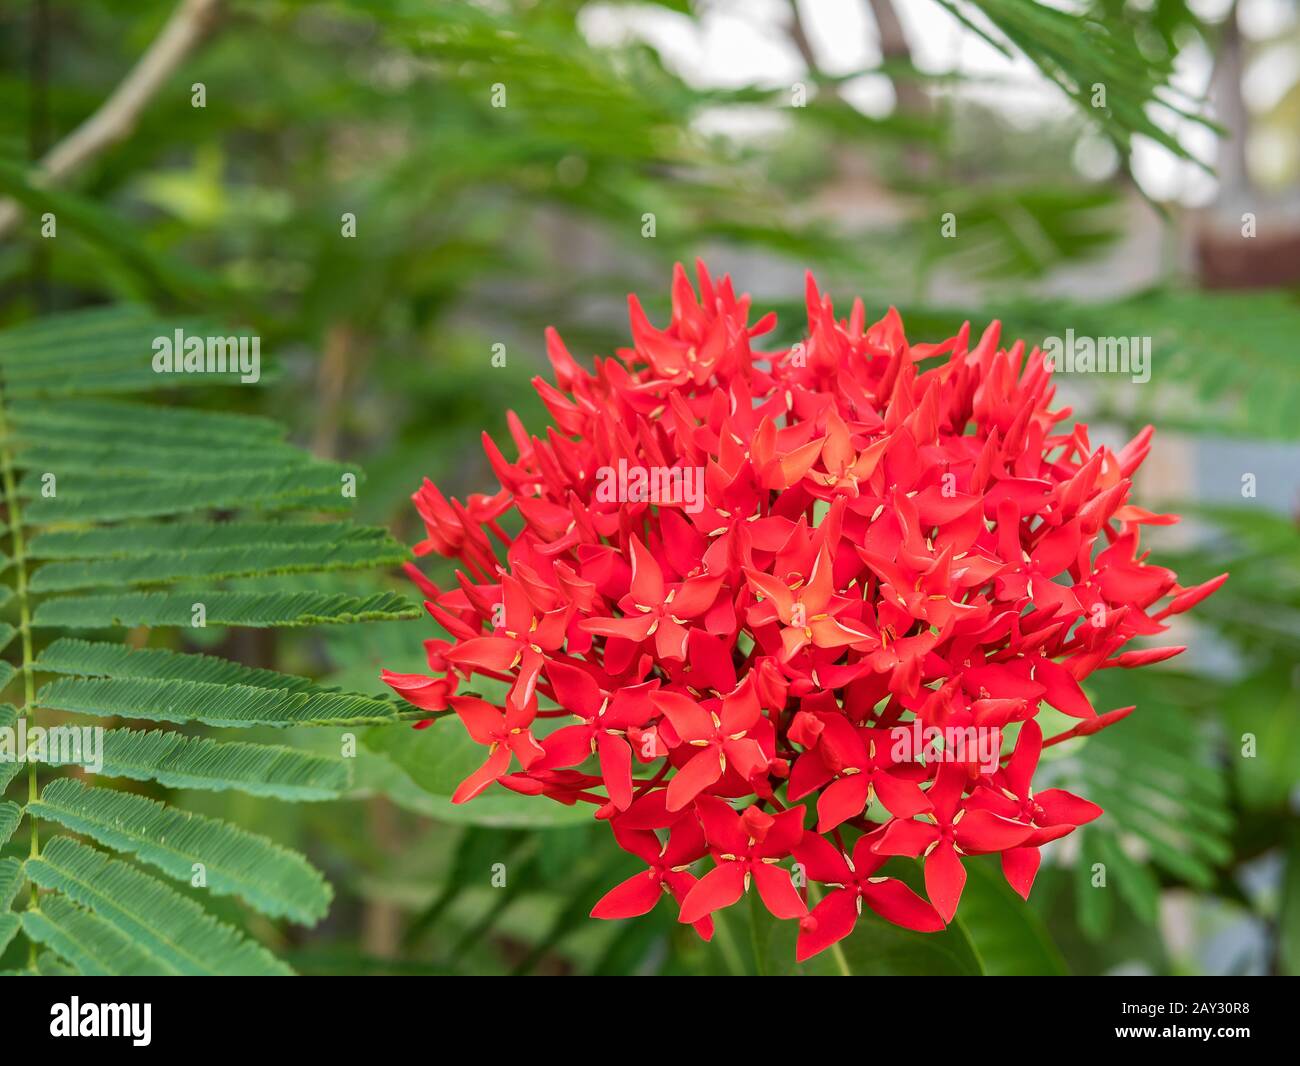 Stachelblume, roter Blumenspitze und grüne Blätter. Stachelblume im Garten mit natürlichem Hintergrund Stockfoto